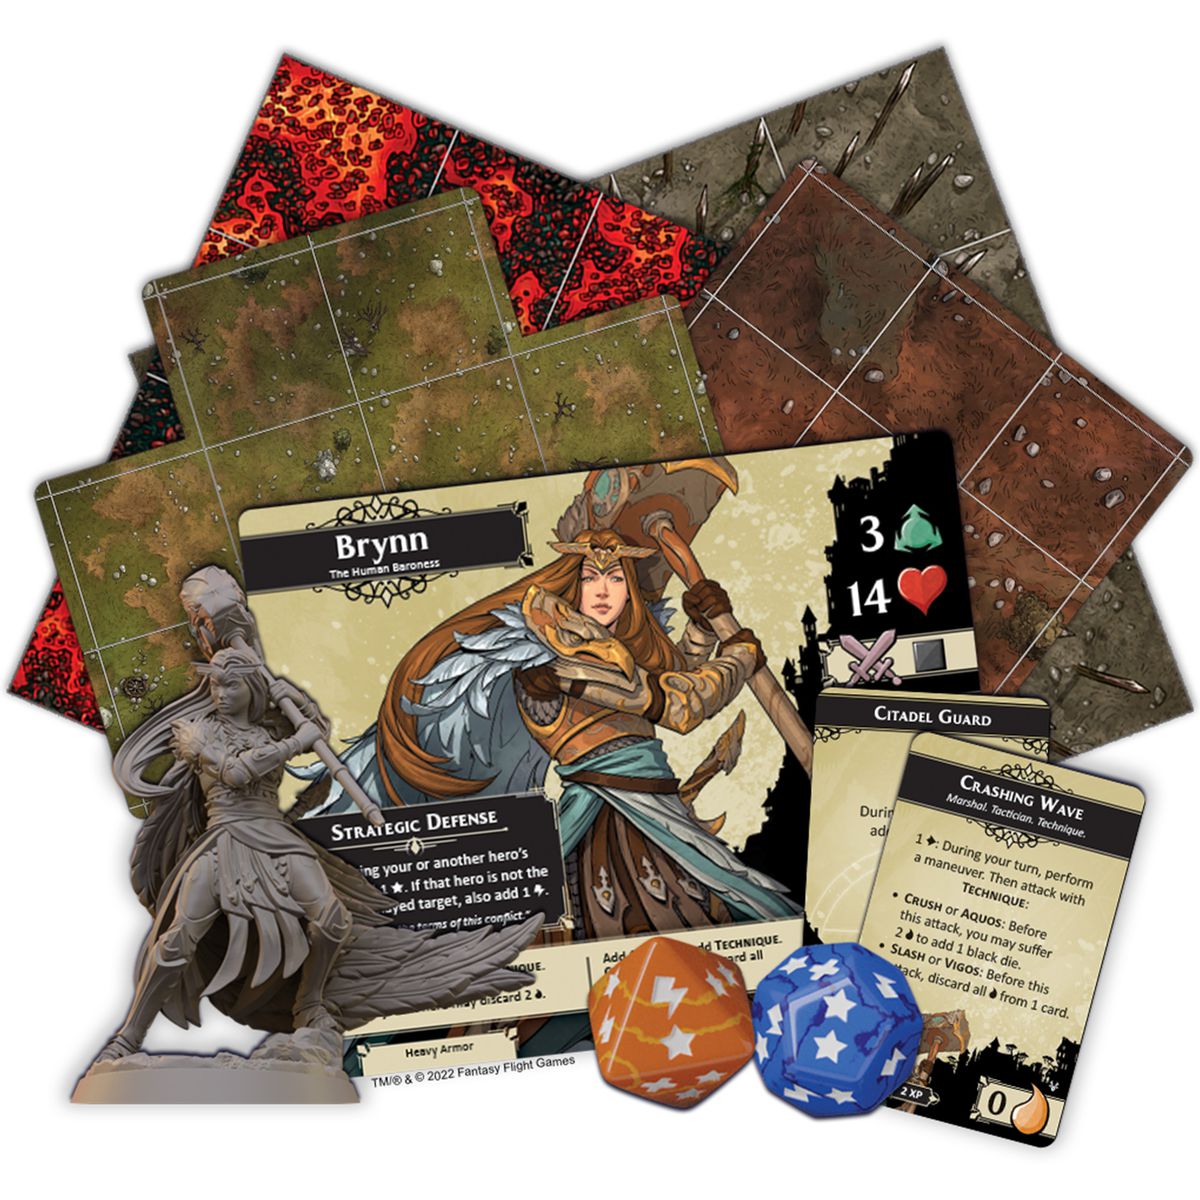 Tessere e una carta giocatore, più alcuni dadi personalizzati, per Descent Act 2: The Betrayer's War. 